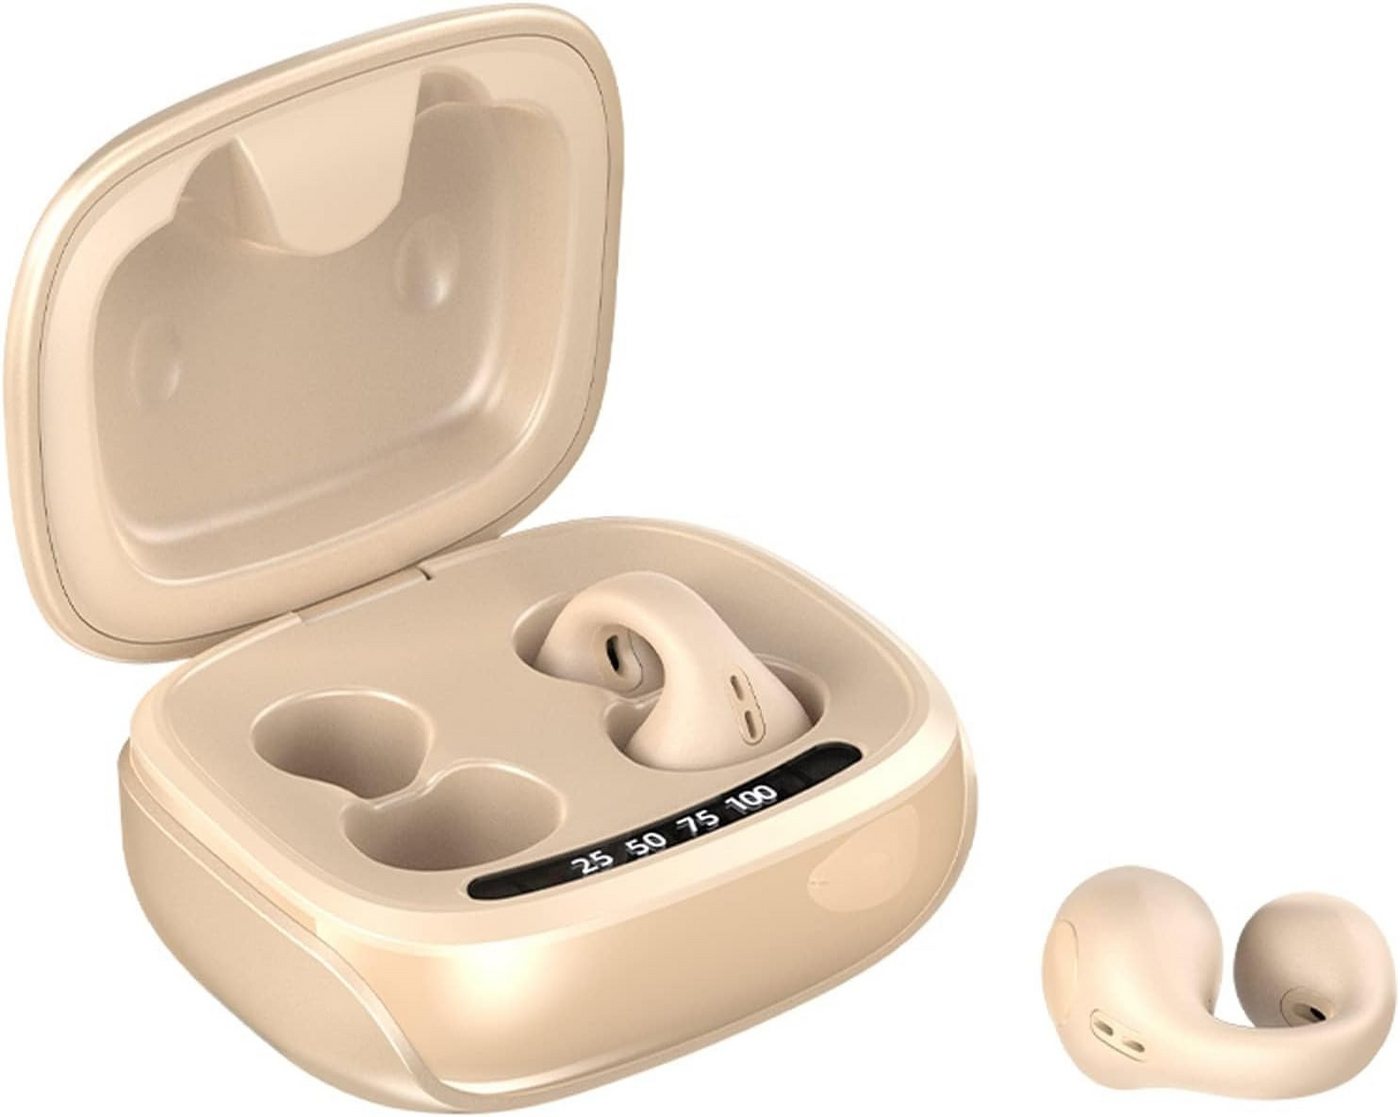 Xmenha HiFi-Stereoklang Open-Ear-Kopfhörer (Dank des ergonomischen Designs und des leichten Materials bieten die Kopfhörer ganztägigen Tragekomfort ohne Stress oder Beschwerden., Intuitive Touch-Steuerung und digitale LED-Anzeige für ein müheloses) von Xmenha